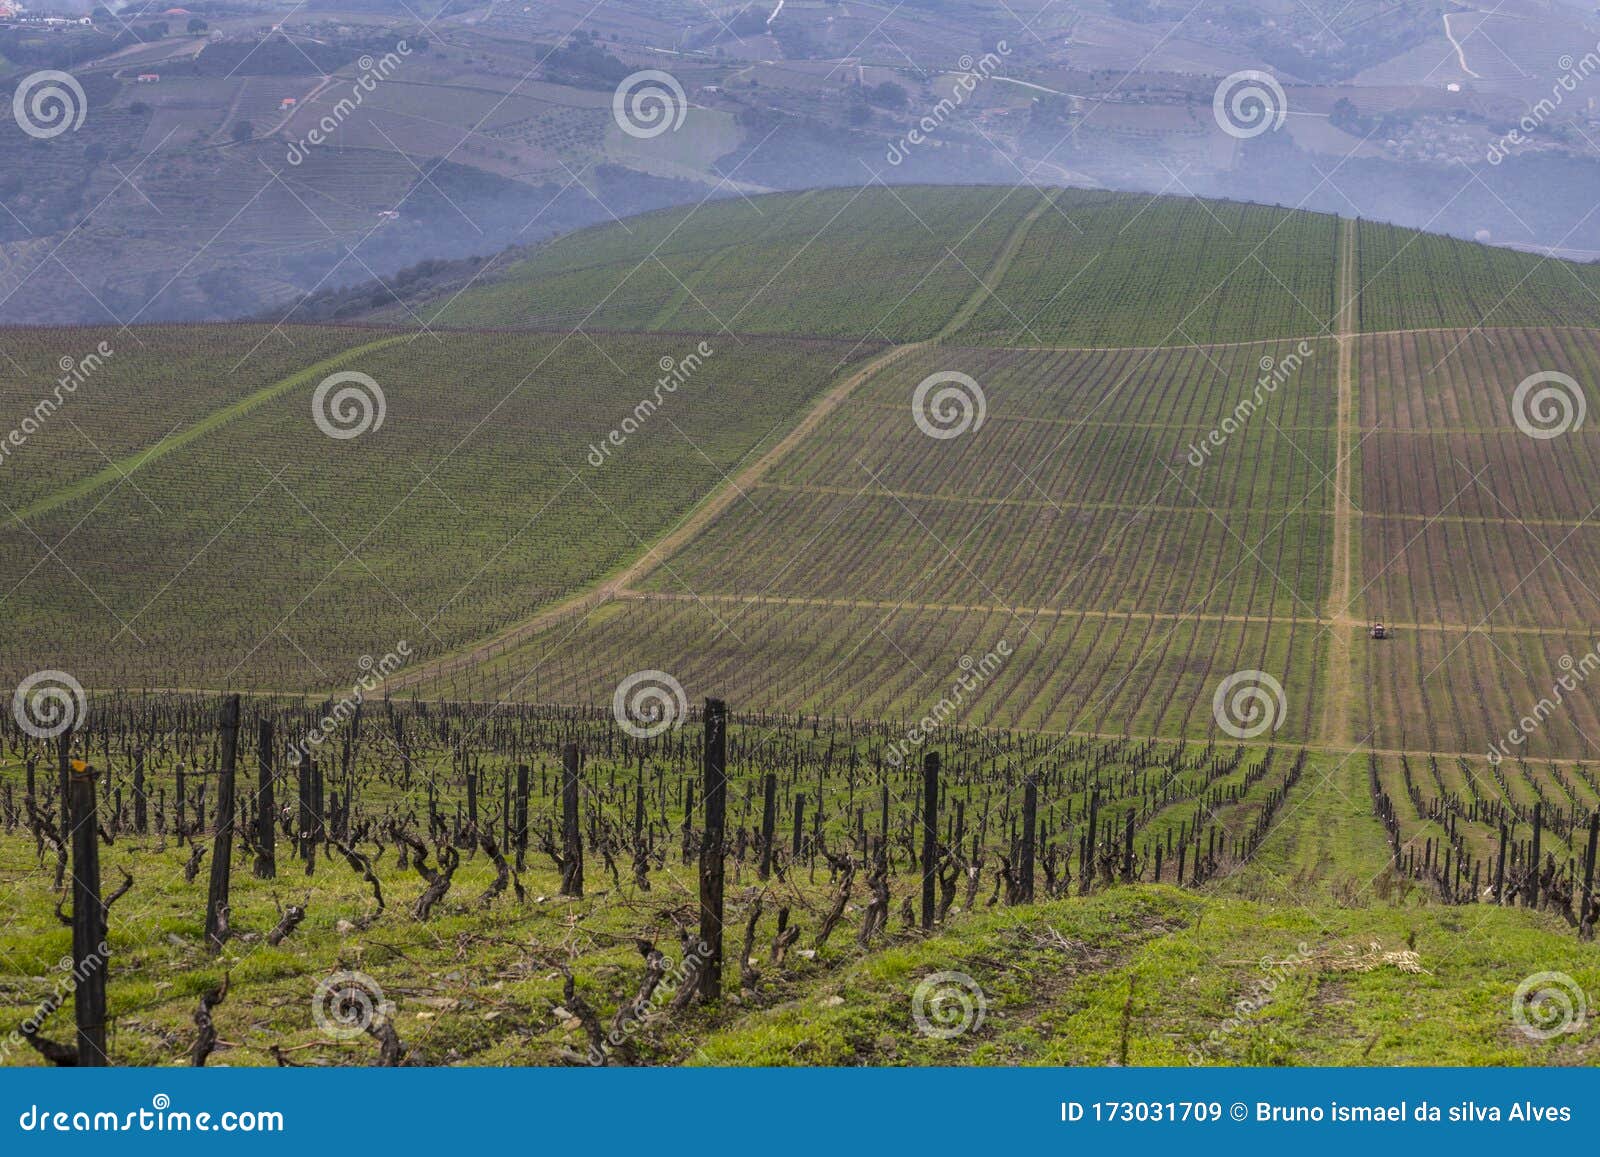 unesco world heritage, the beautiful endless lines of douro valley vineyards, in vila nova de foz coa.